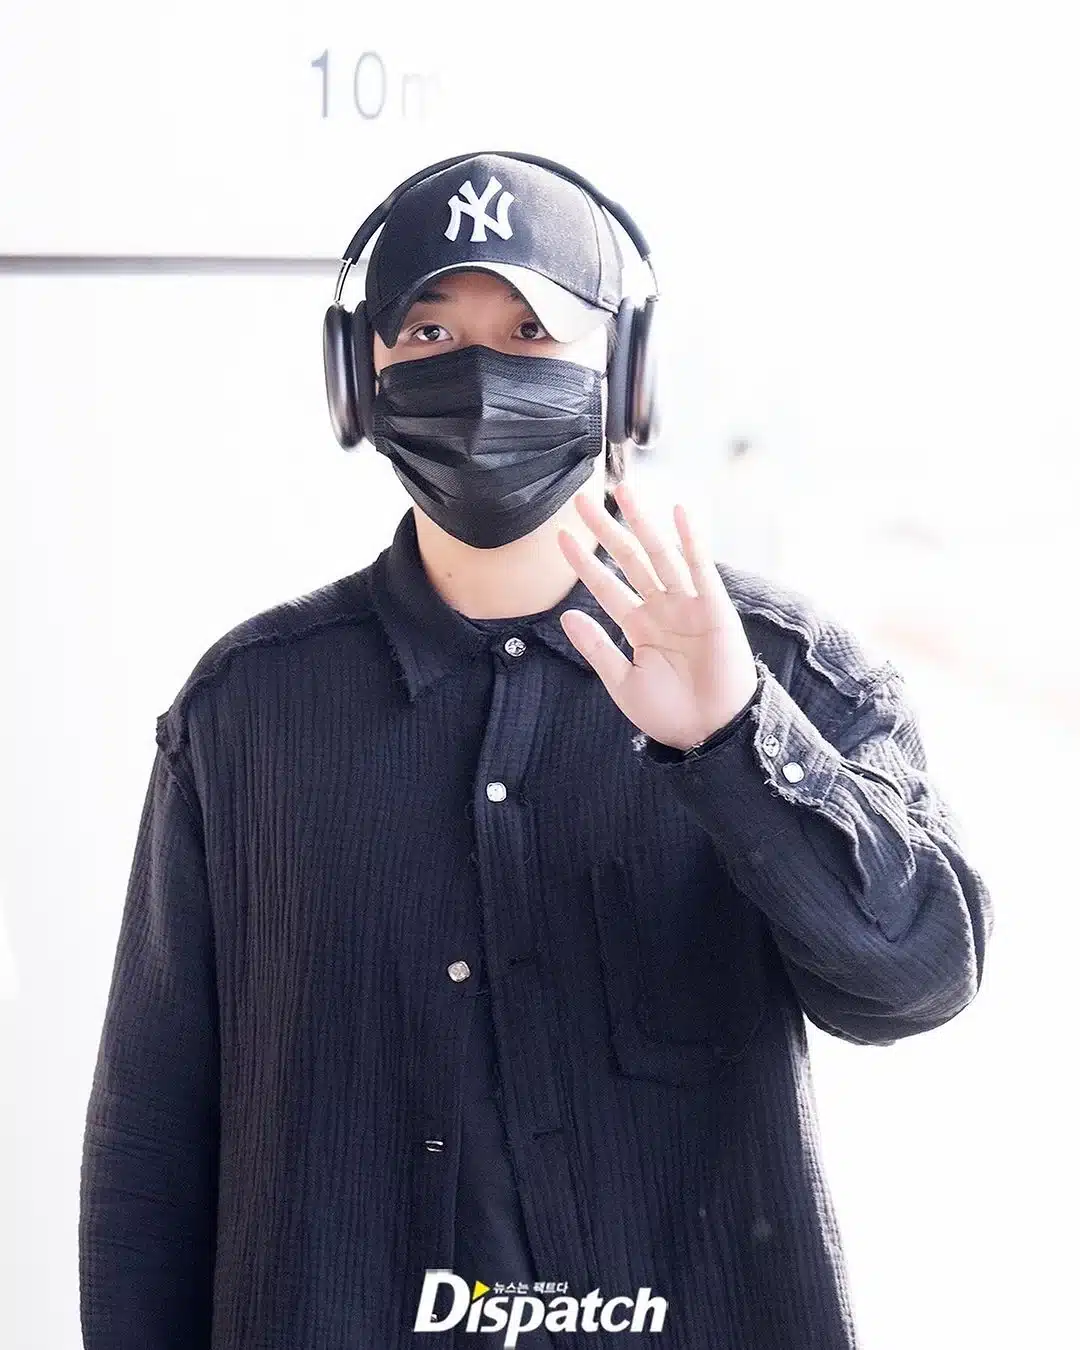 ATEEZ демонстрируют непринужденное обаяние в аэропорту перед вылетом в Токио